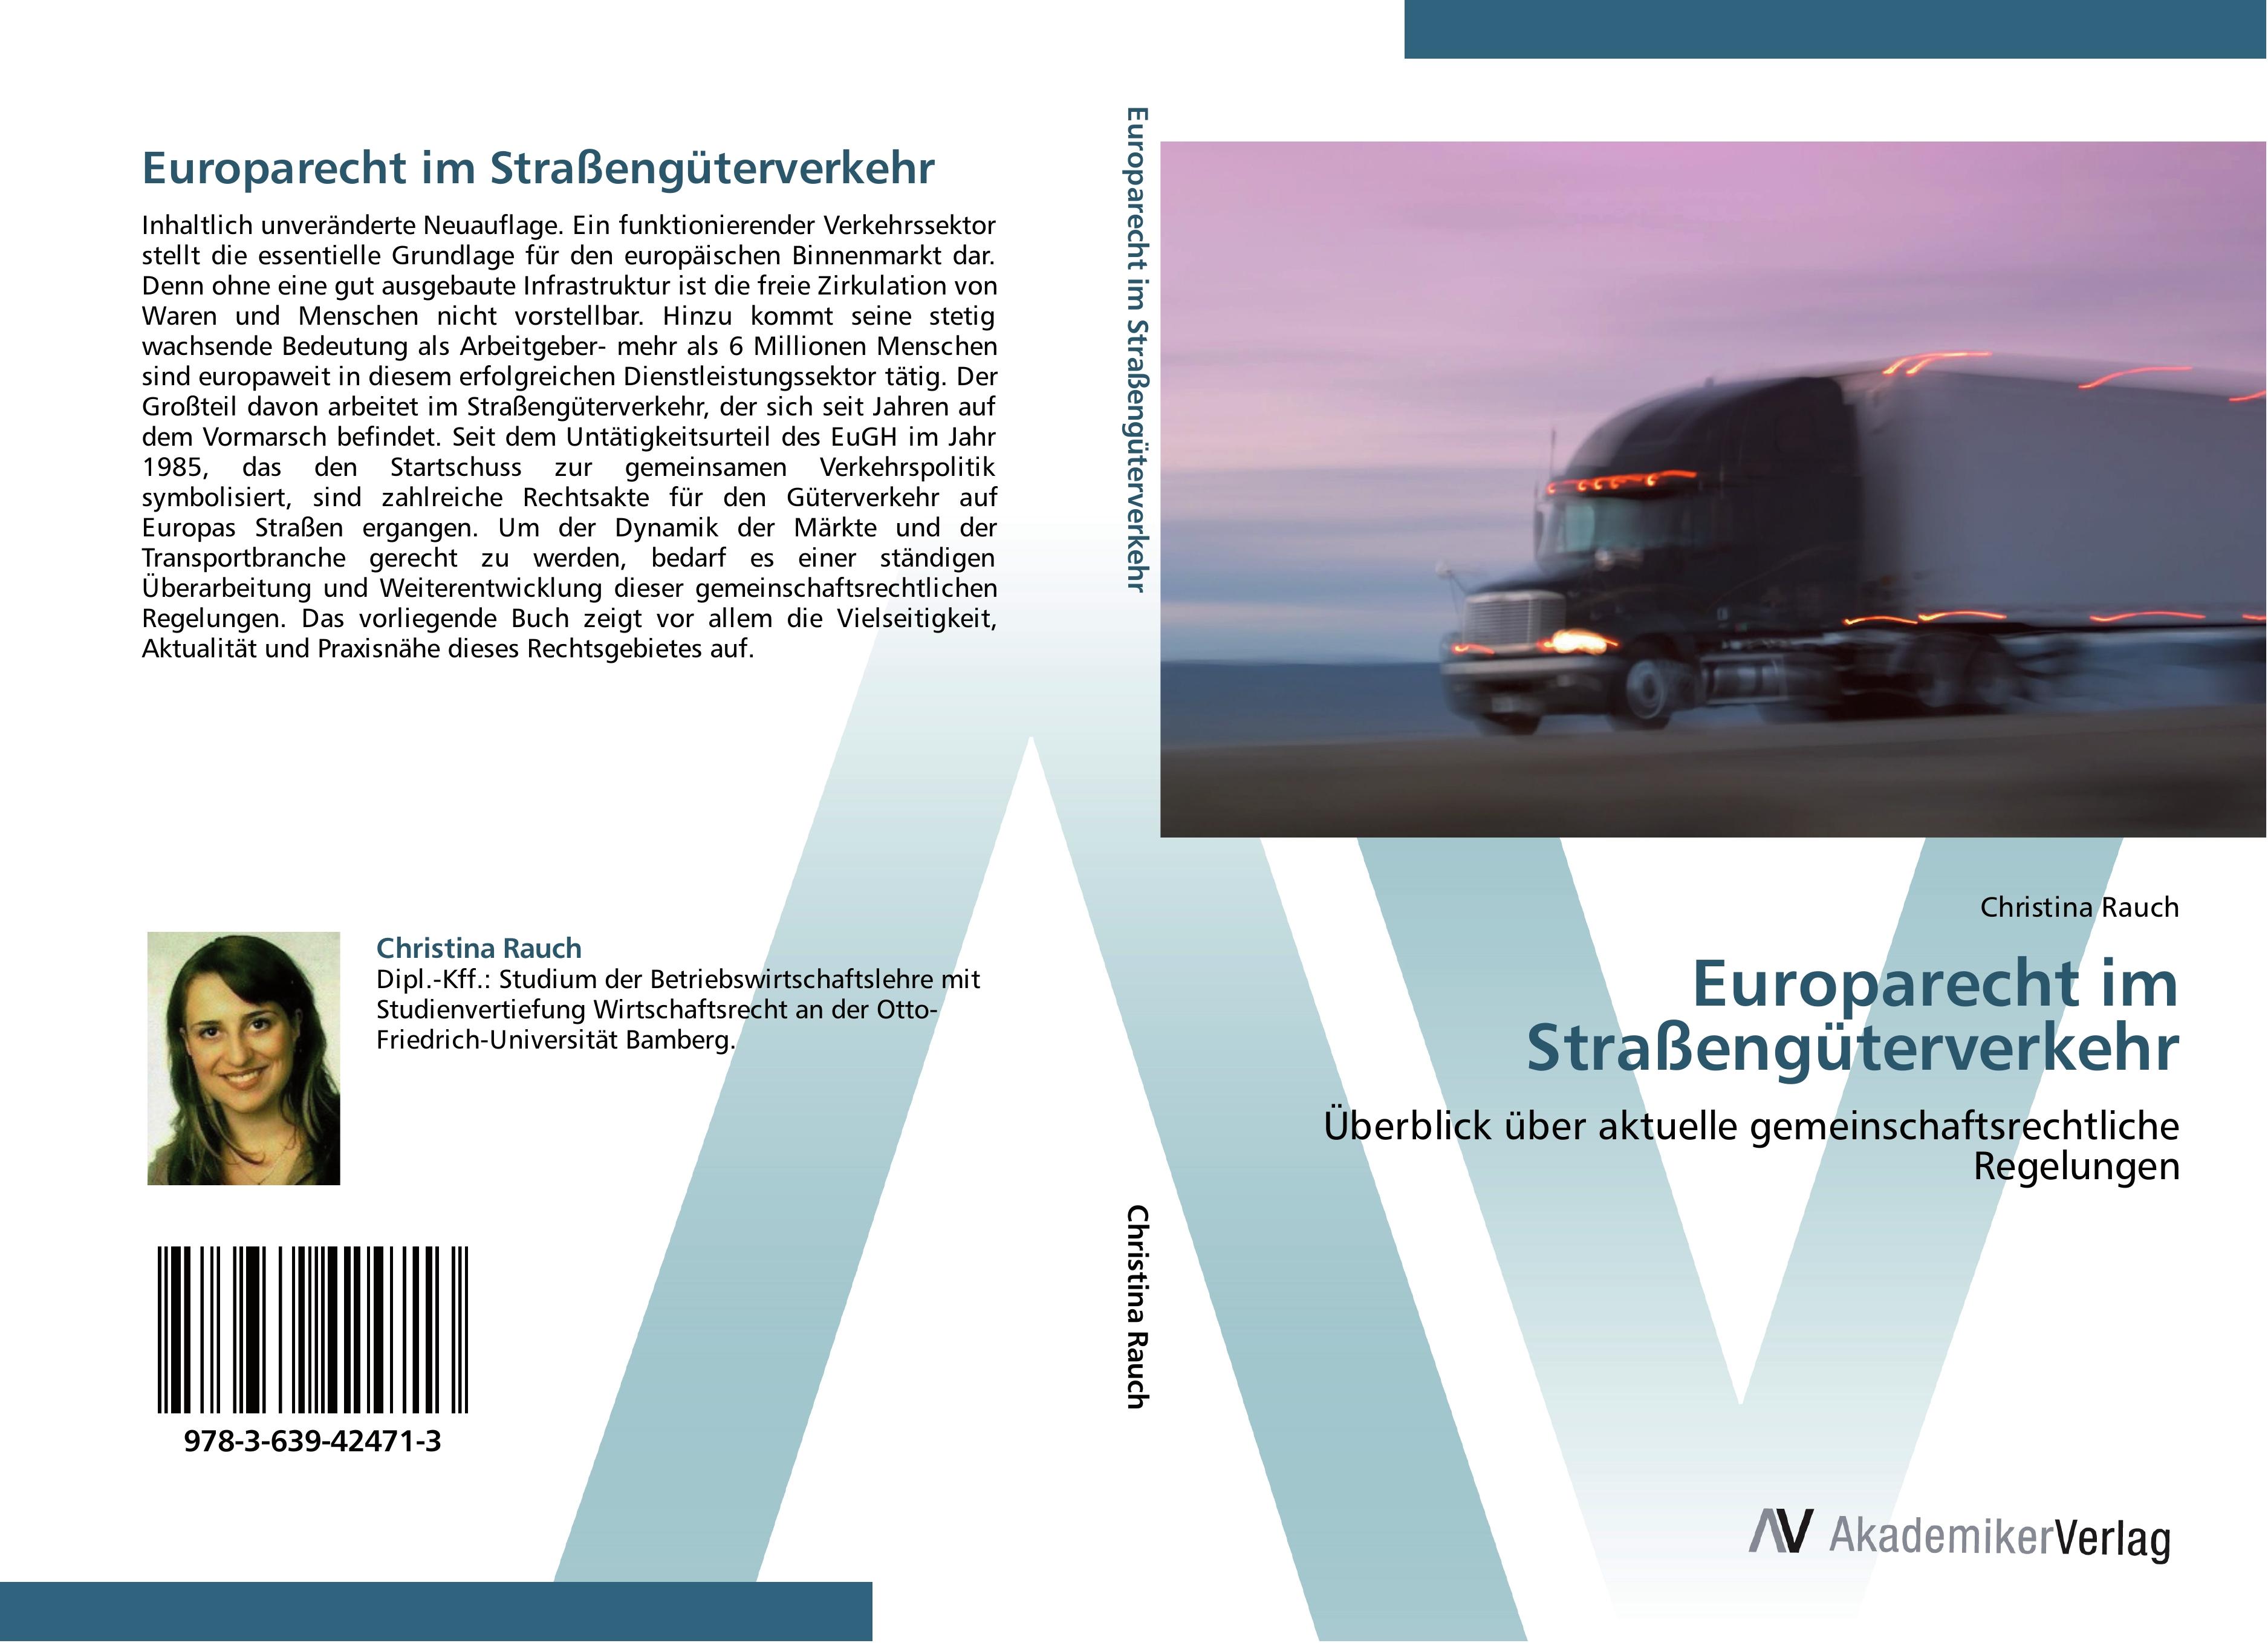 Europarecht im Strassengueterverkehr - Christina Rauch